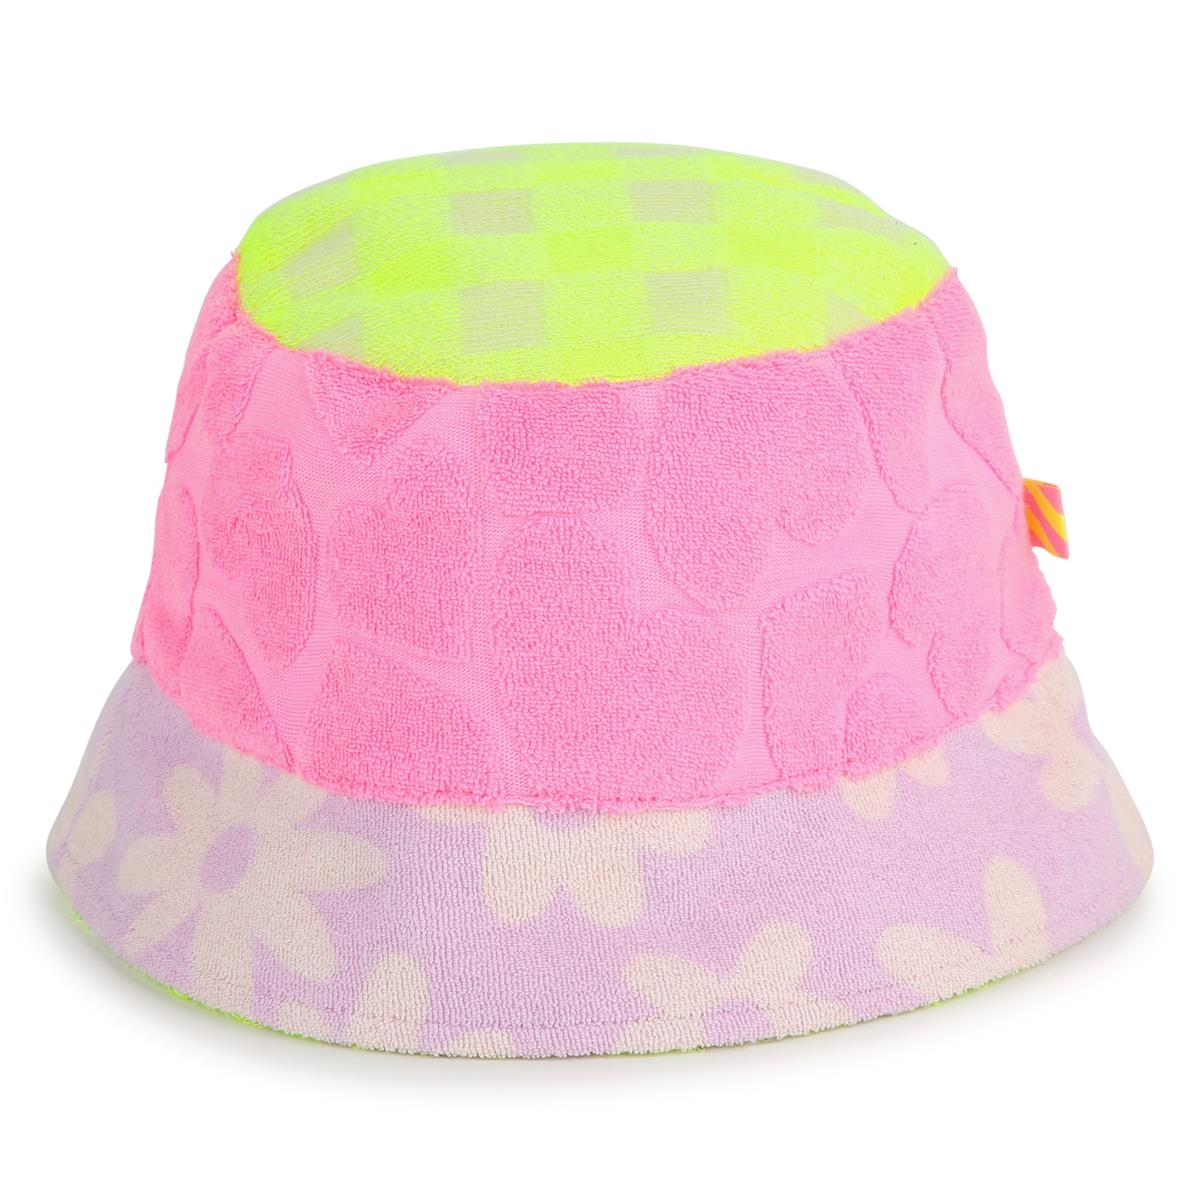 Girls Pink Bucket Hat